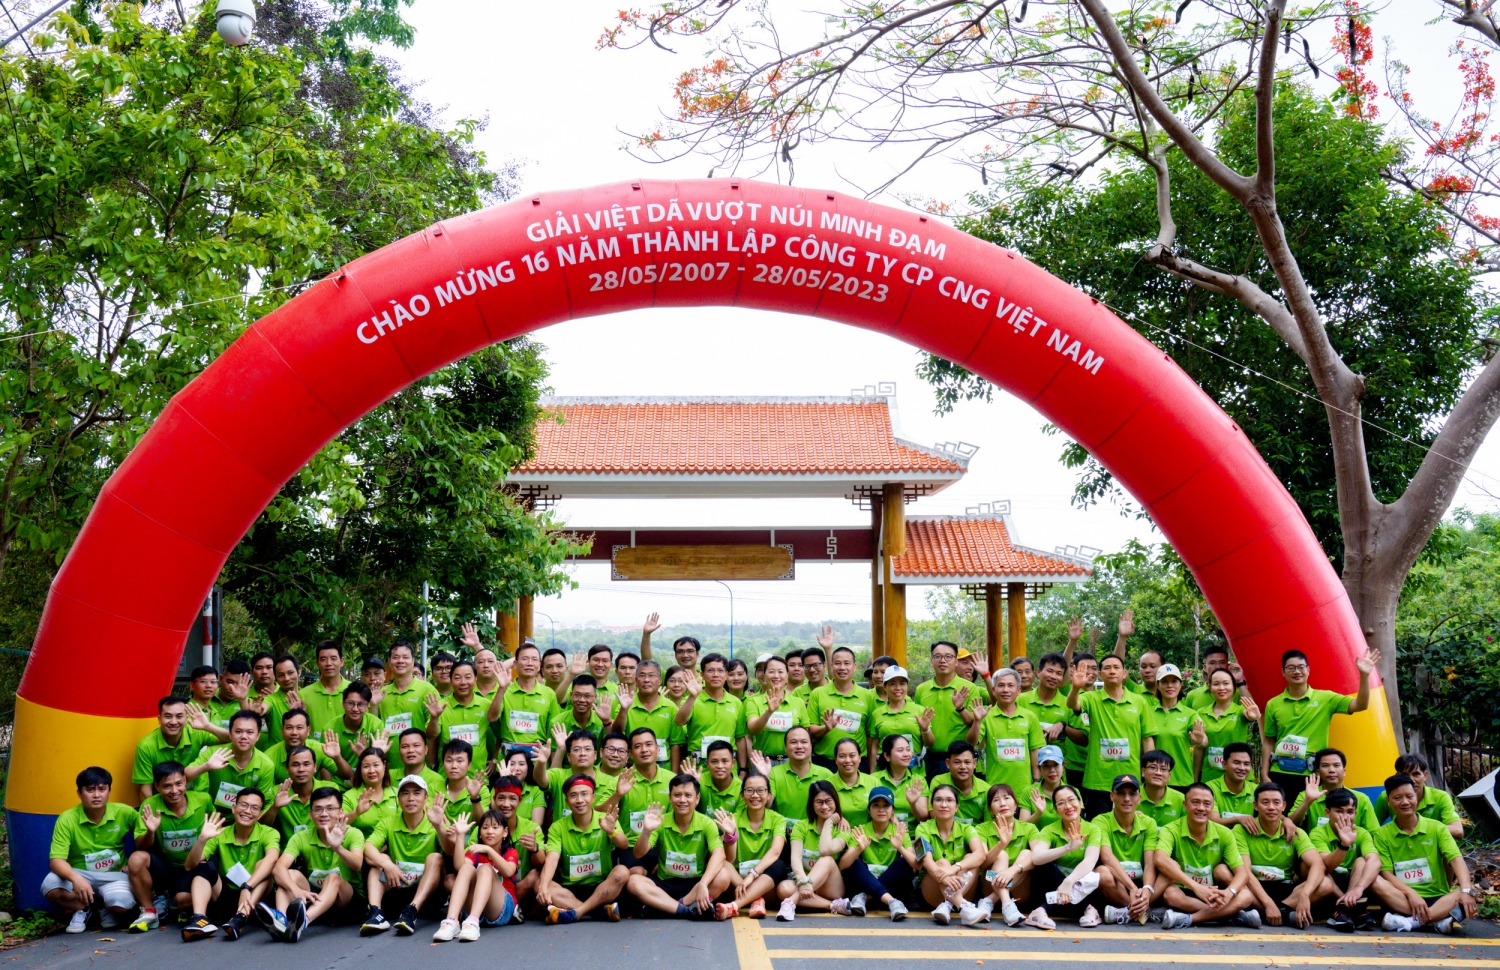 Giải chạy của CNG Việt Nam được khởi động bằng cuộc chạy bộ - diễu hành chinh phục núi Minh Đạm